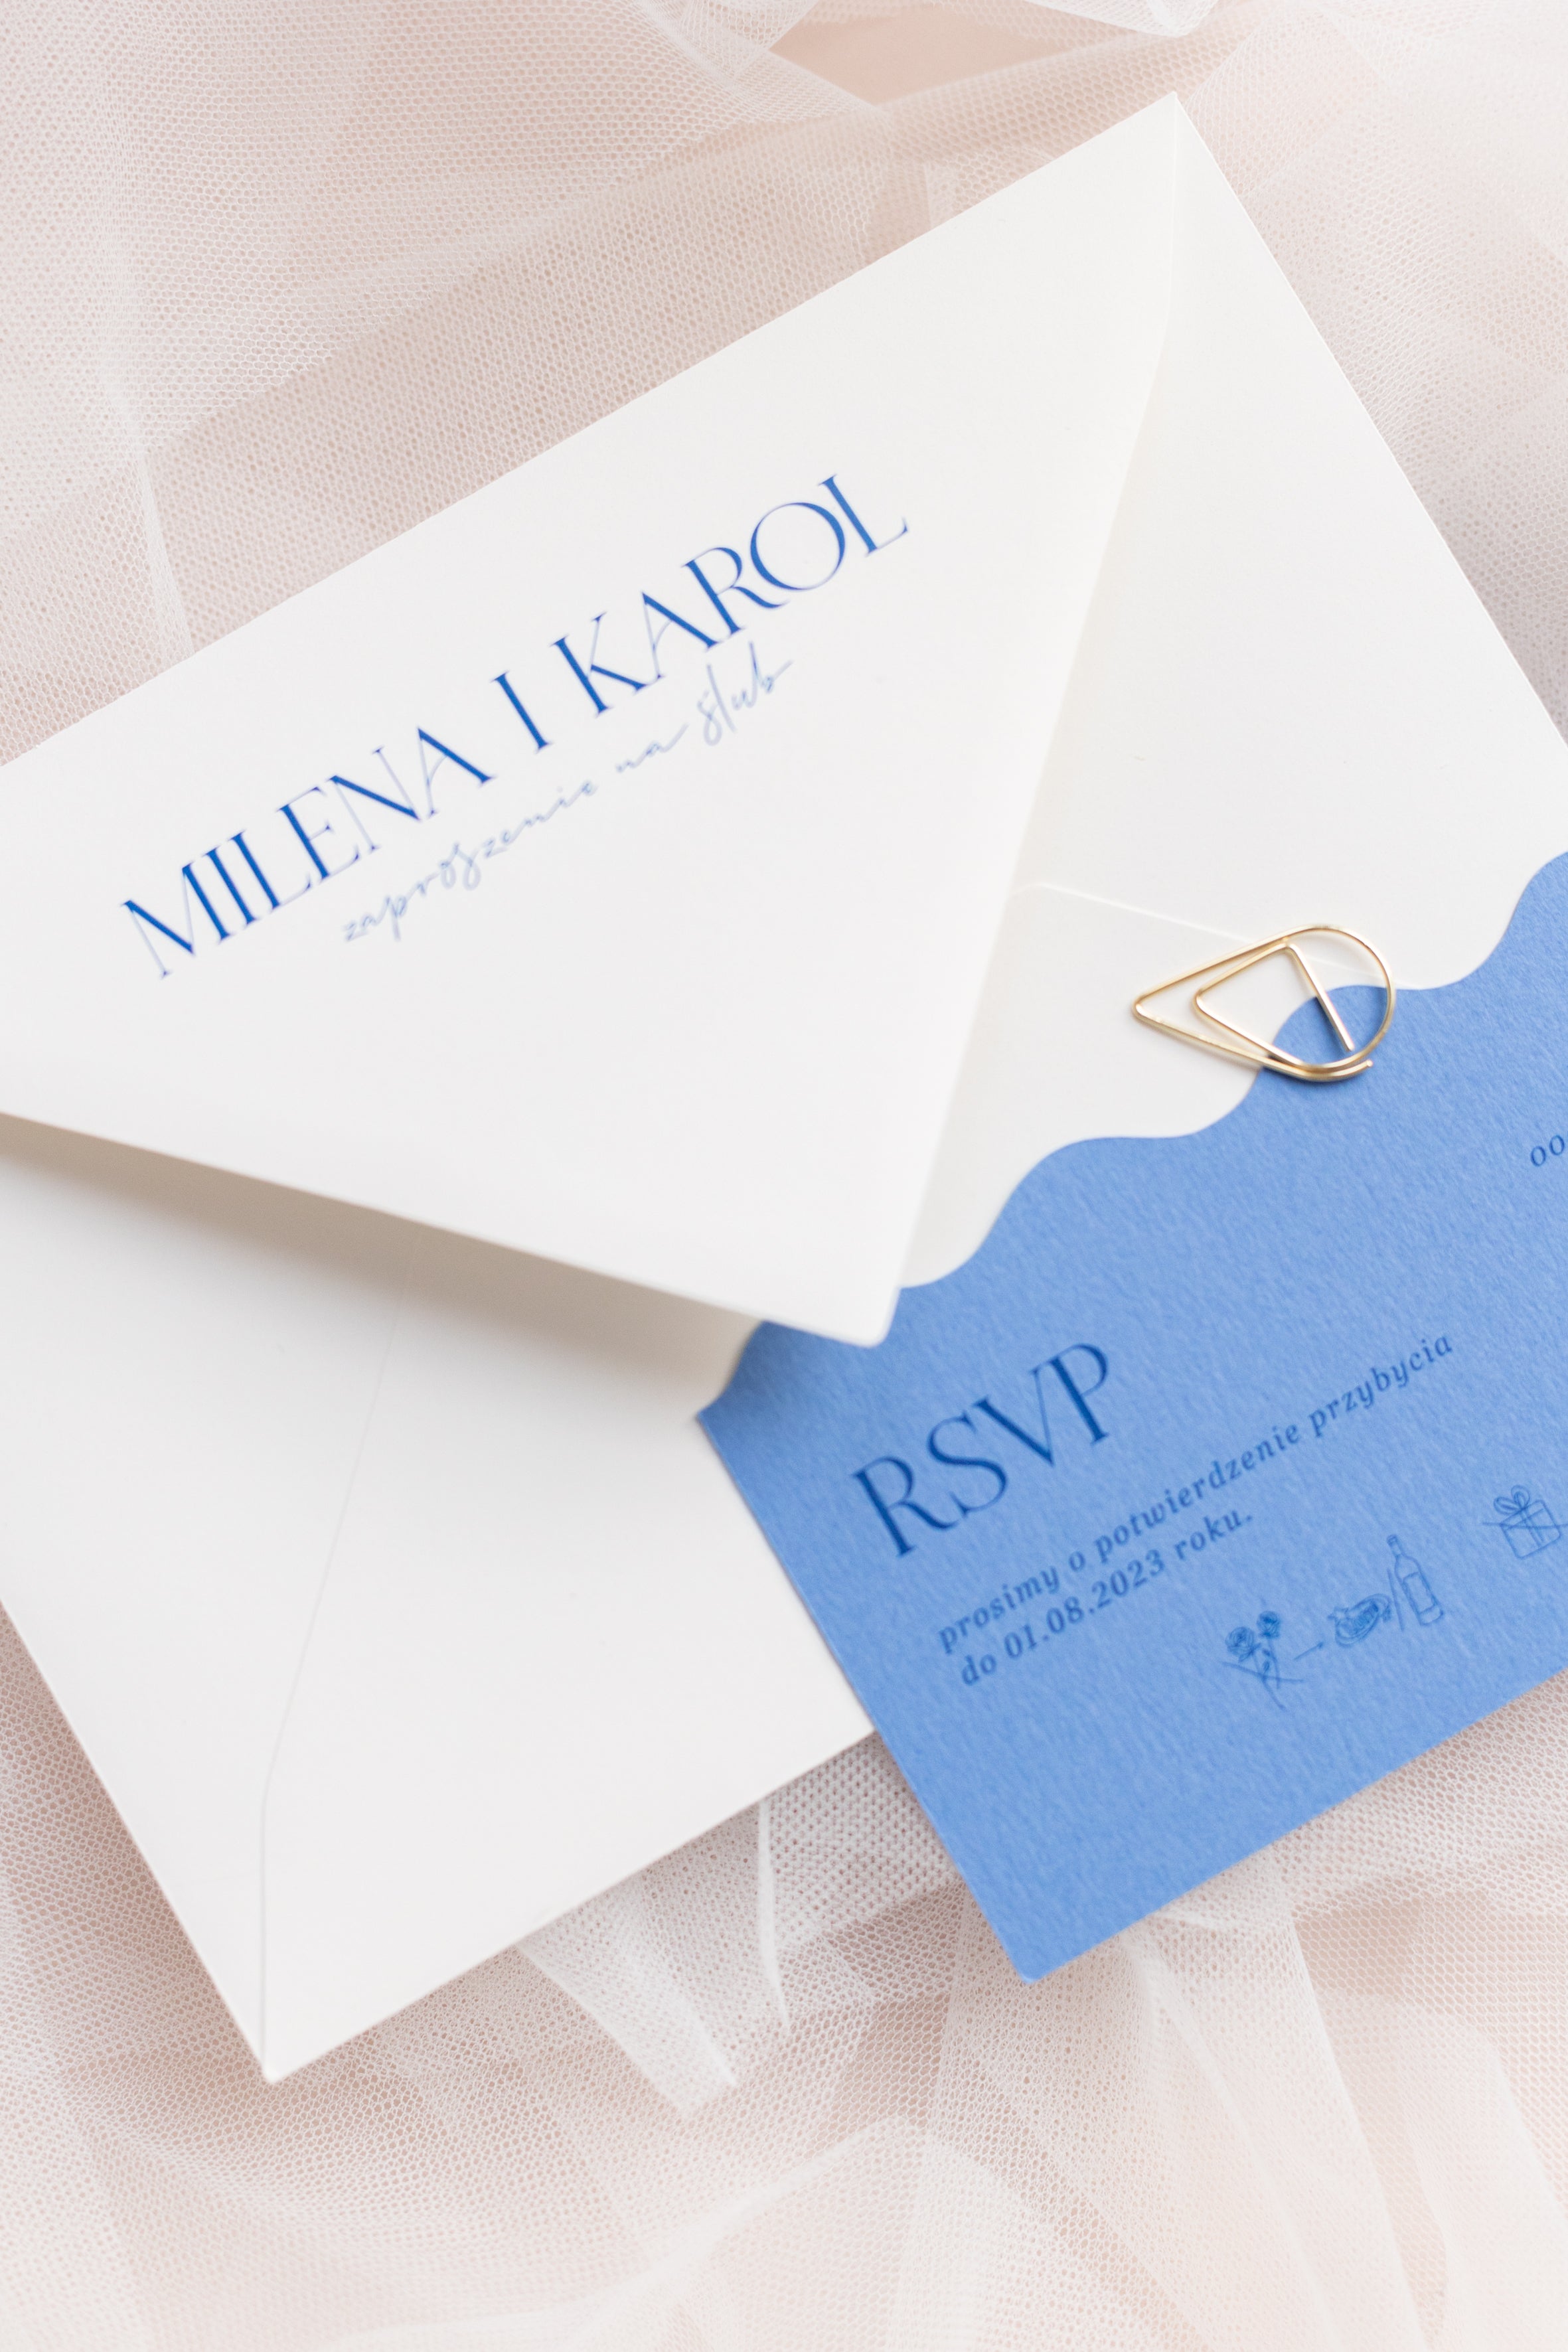 Minimalistyczne zaproszenia ślubne z kolekcji Santorini